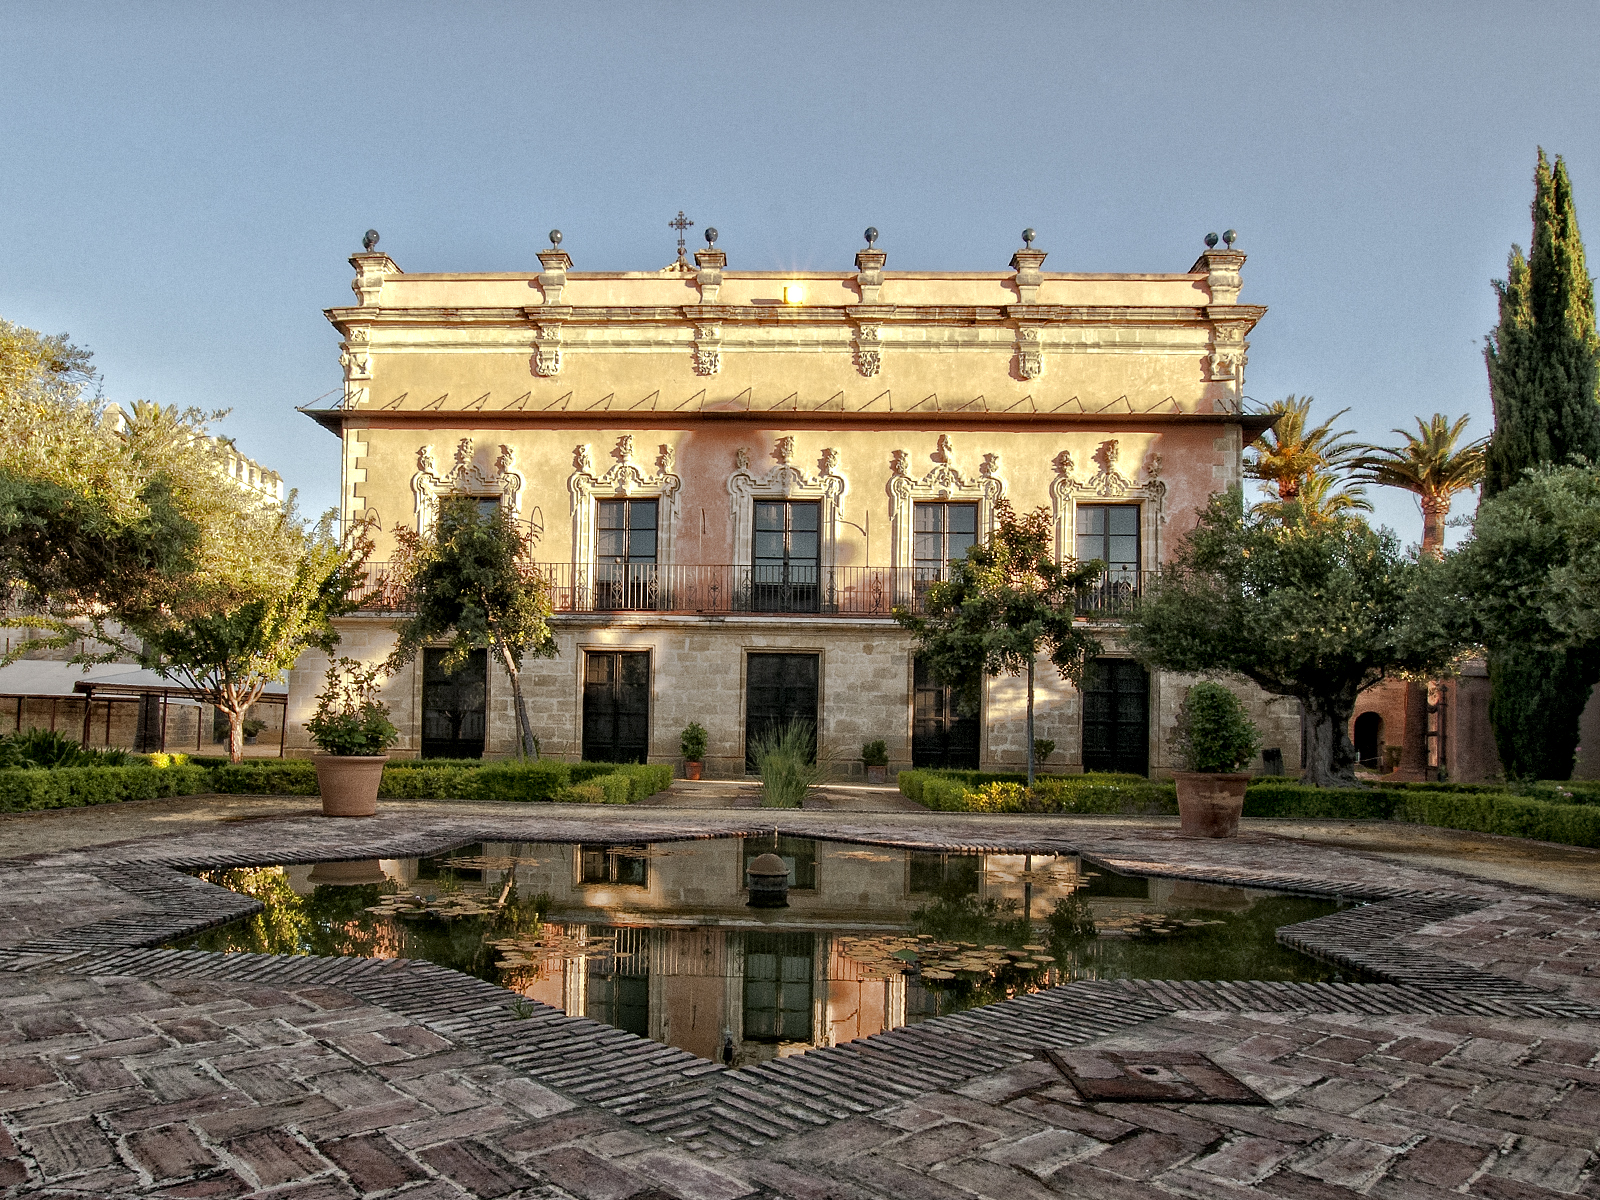 Fachada Sur del Palacio de Villavicencio. Foto cedida por Juan Sánchez Ortega - Sortega Fotografía